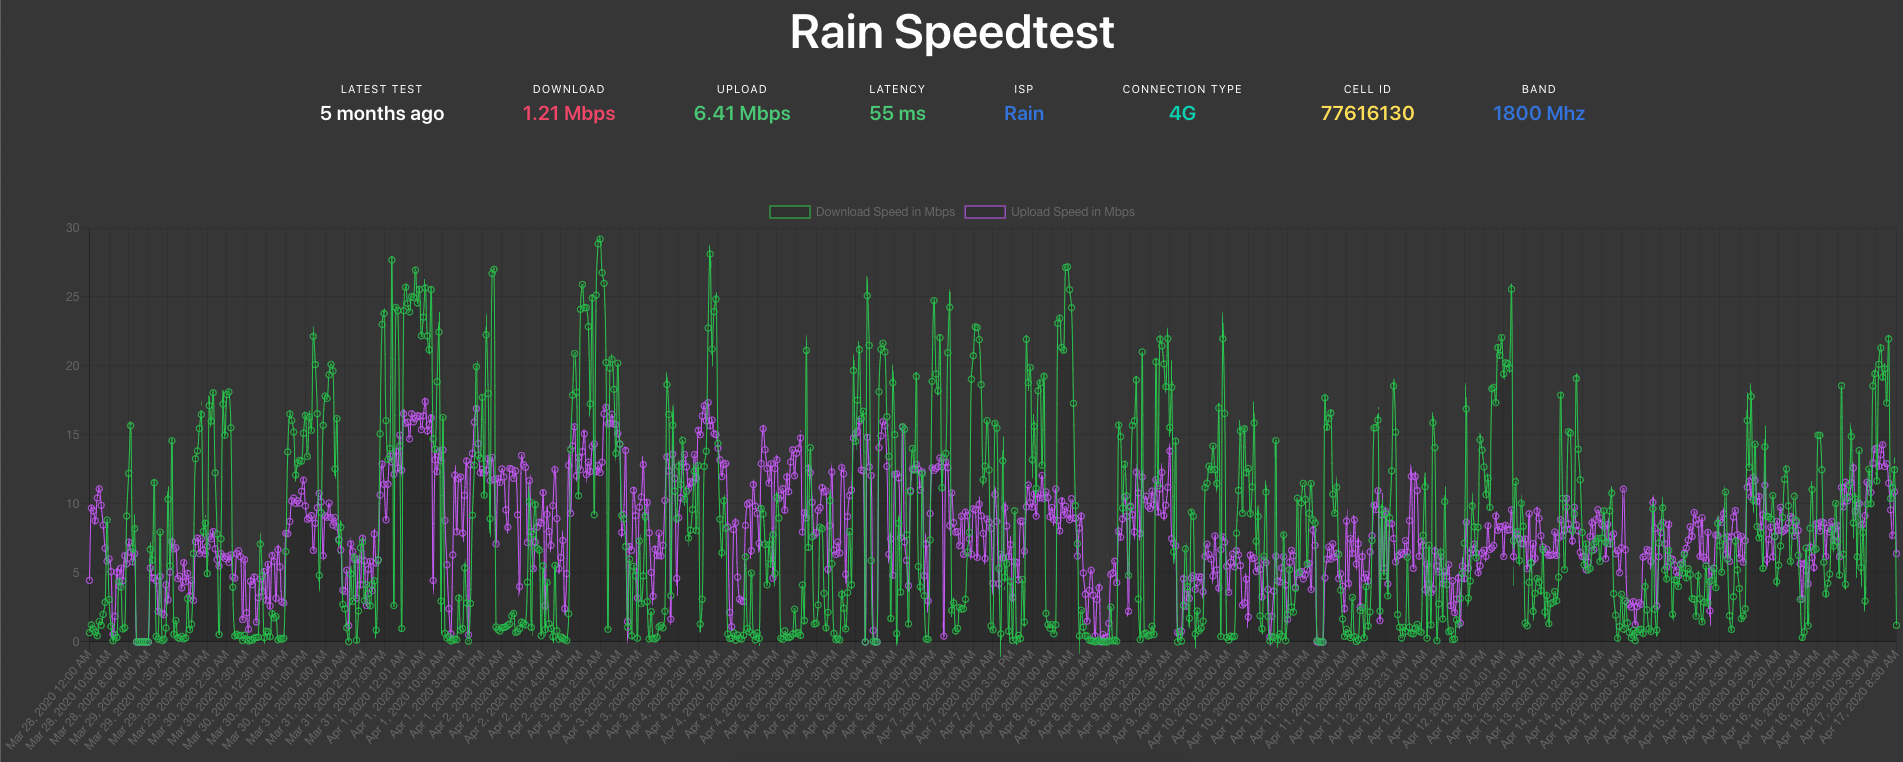 Rain Speedtest